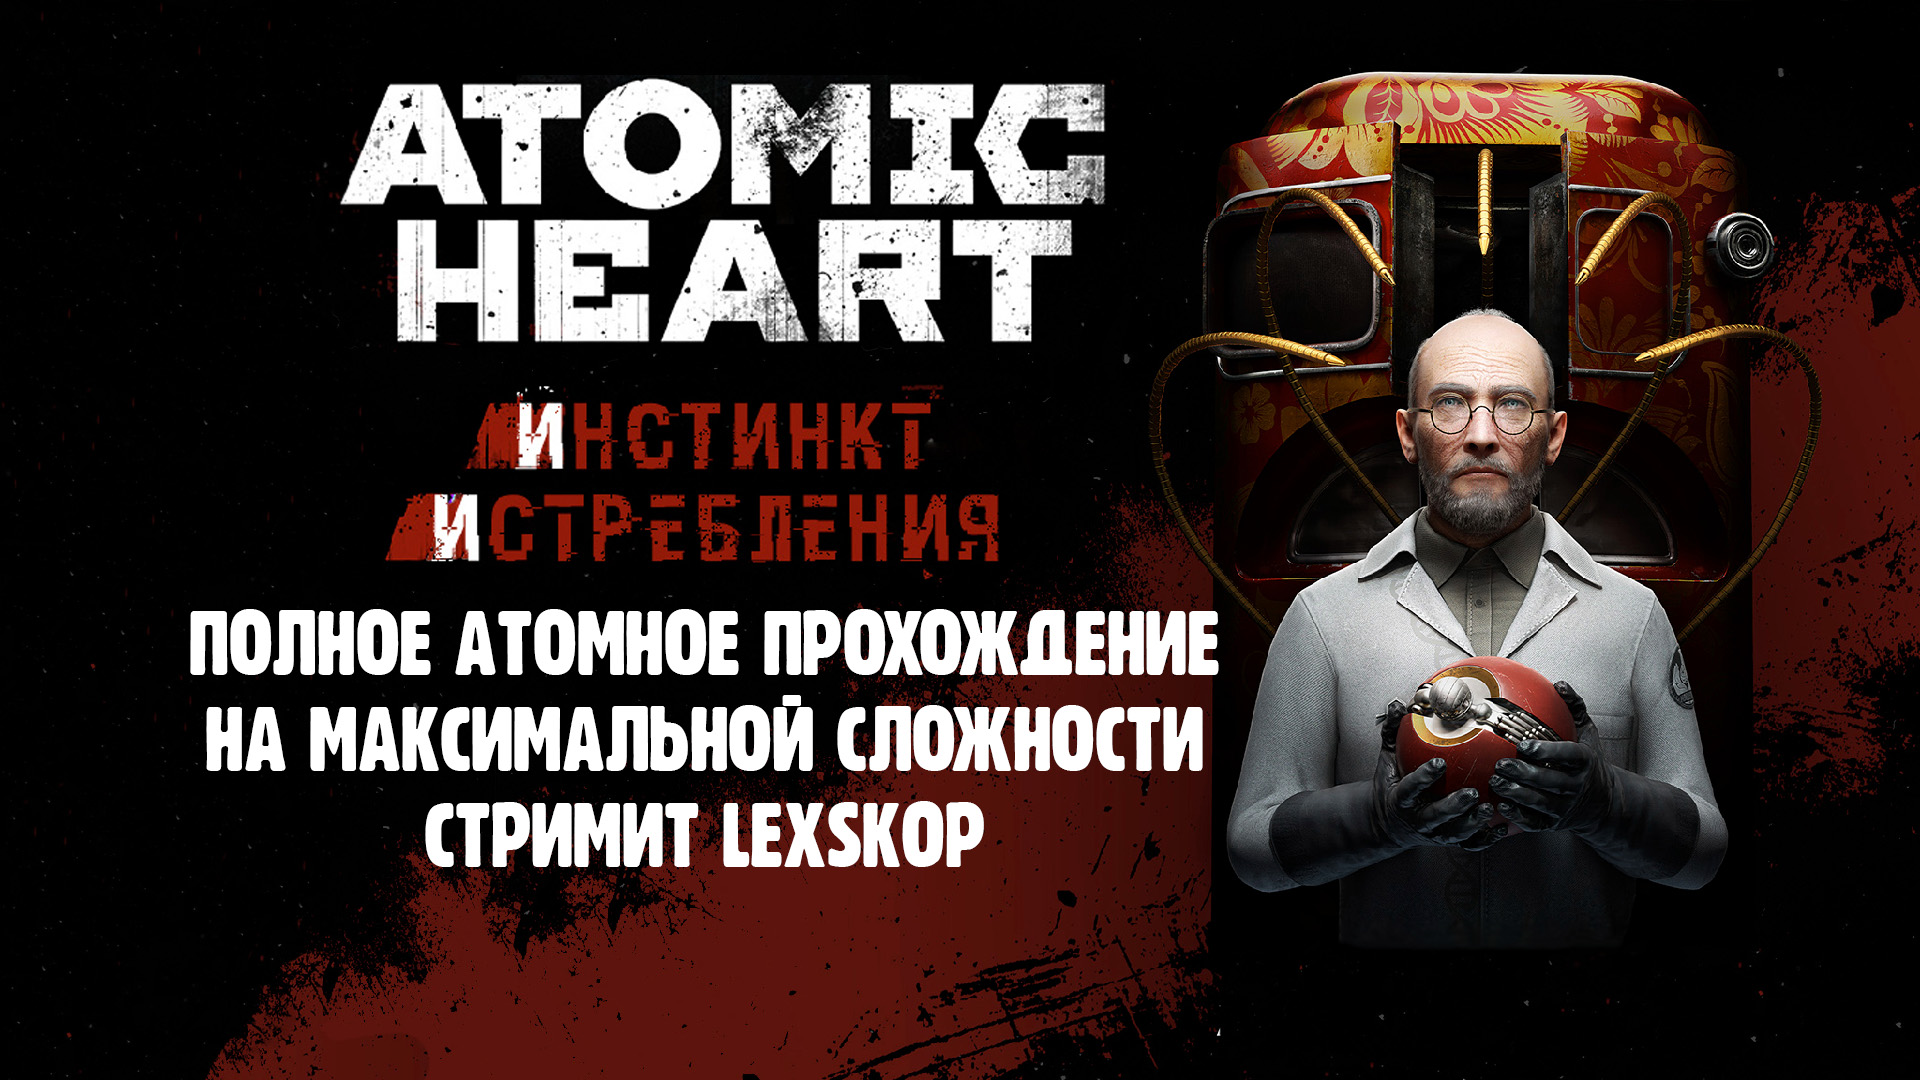 Atomic Heart: DLC Инстинкт Истребления | Полное атомное прохождение | Максимальная сложность